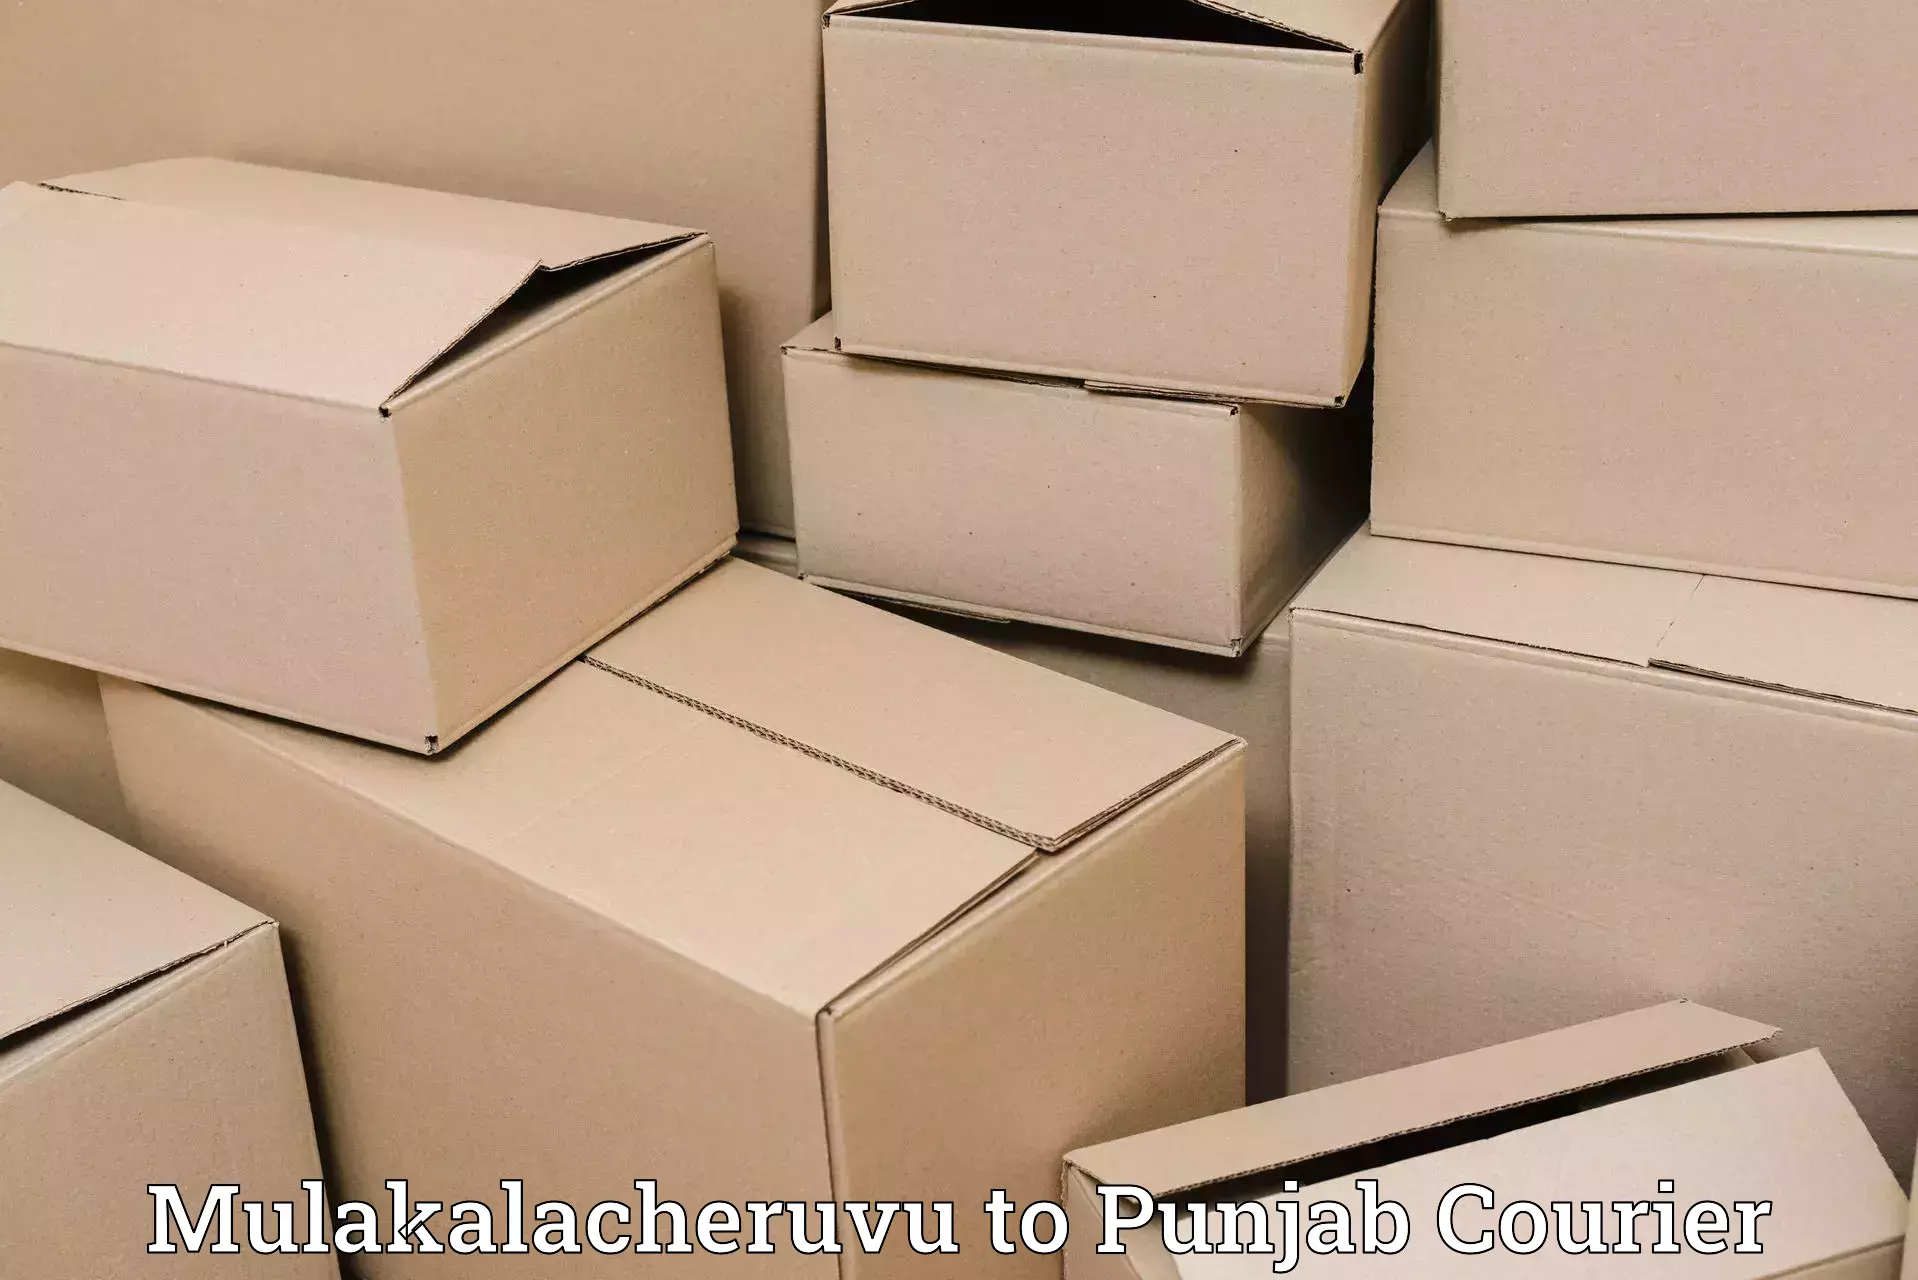 Efficient parcel delivery Mulakalacheruvu to Sirhind Fatehgarh